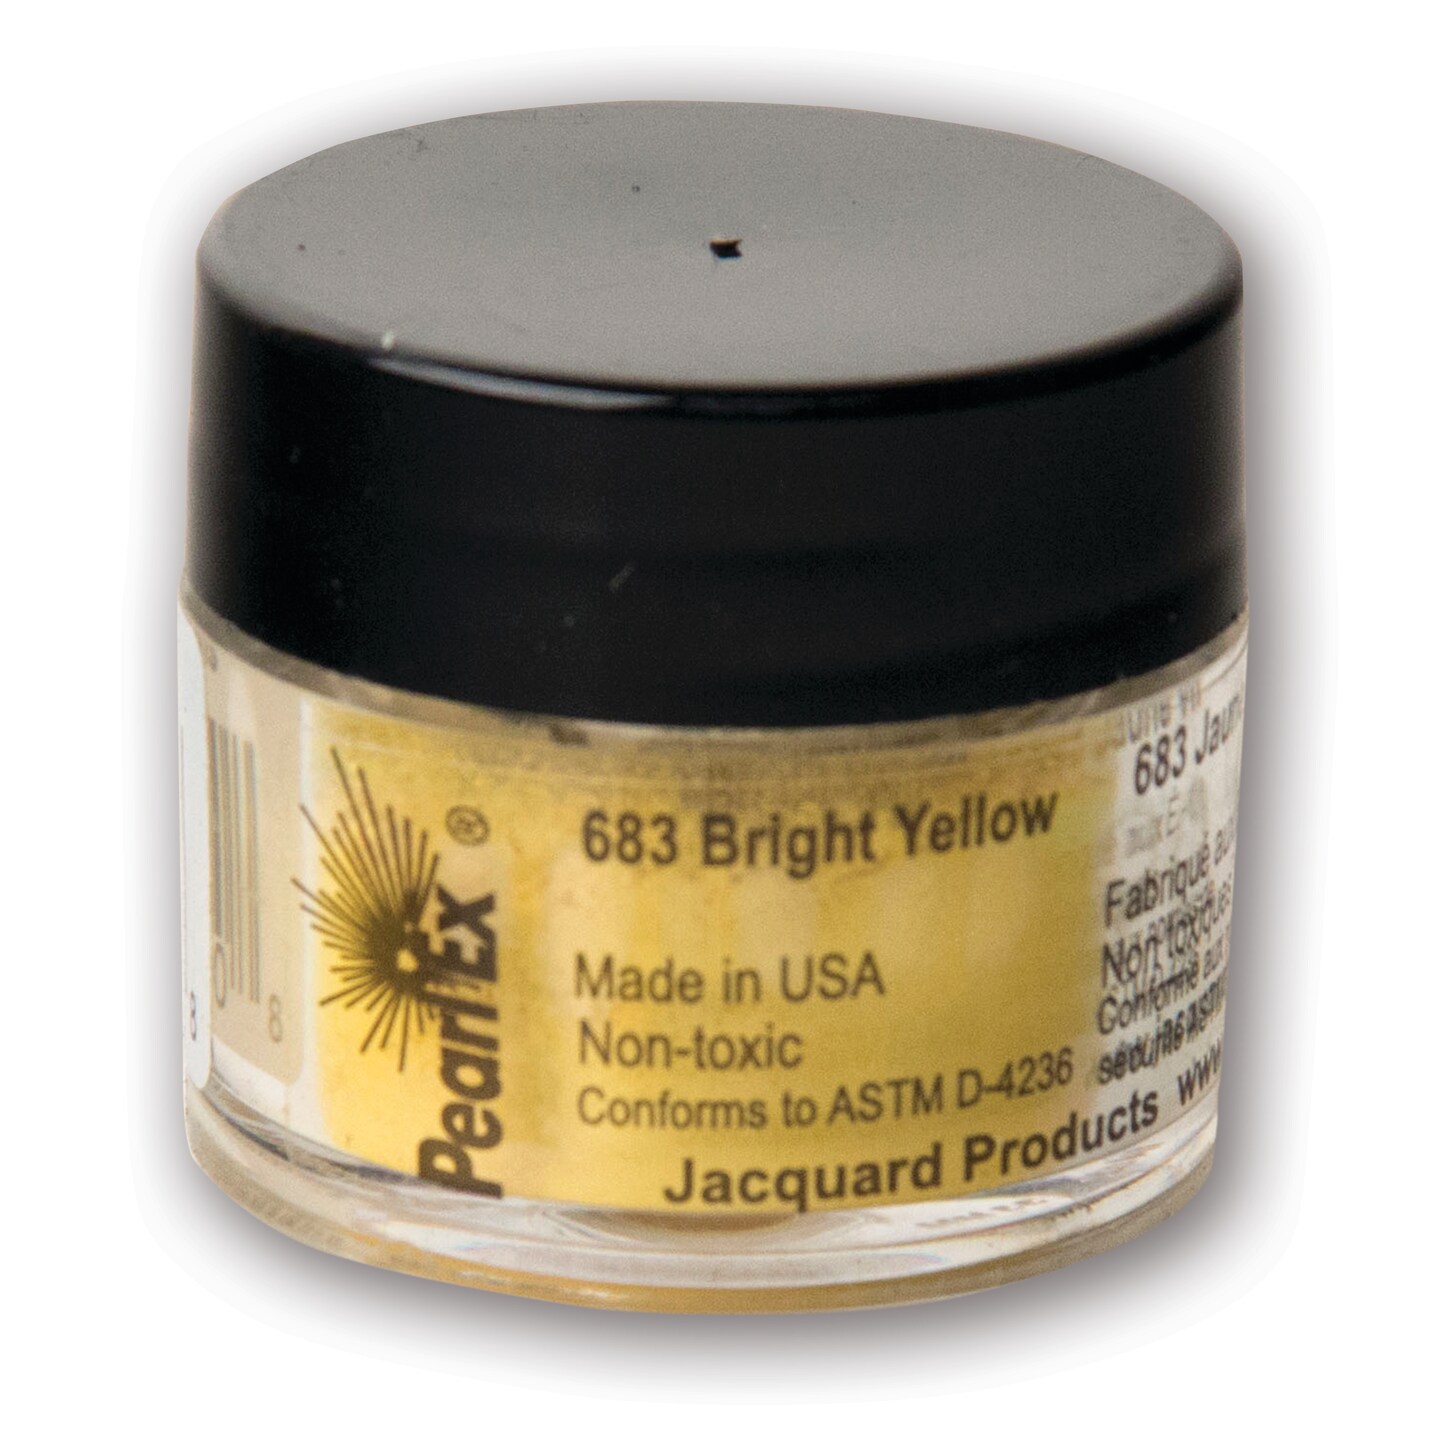 Jacquard Pearl Ex Pigment, 3g Jar, Bright Yellow